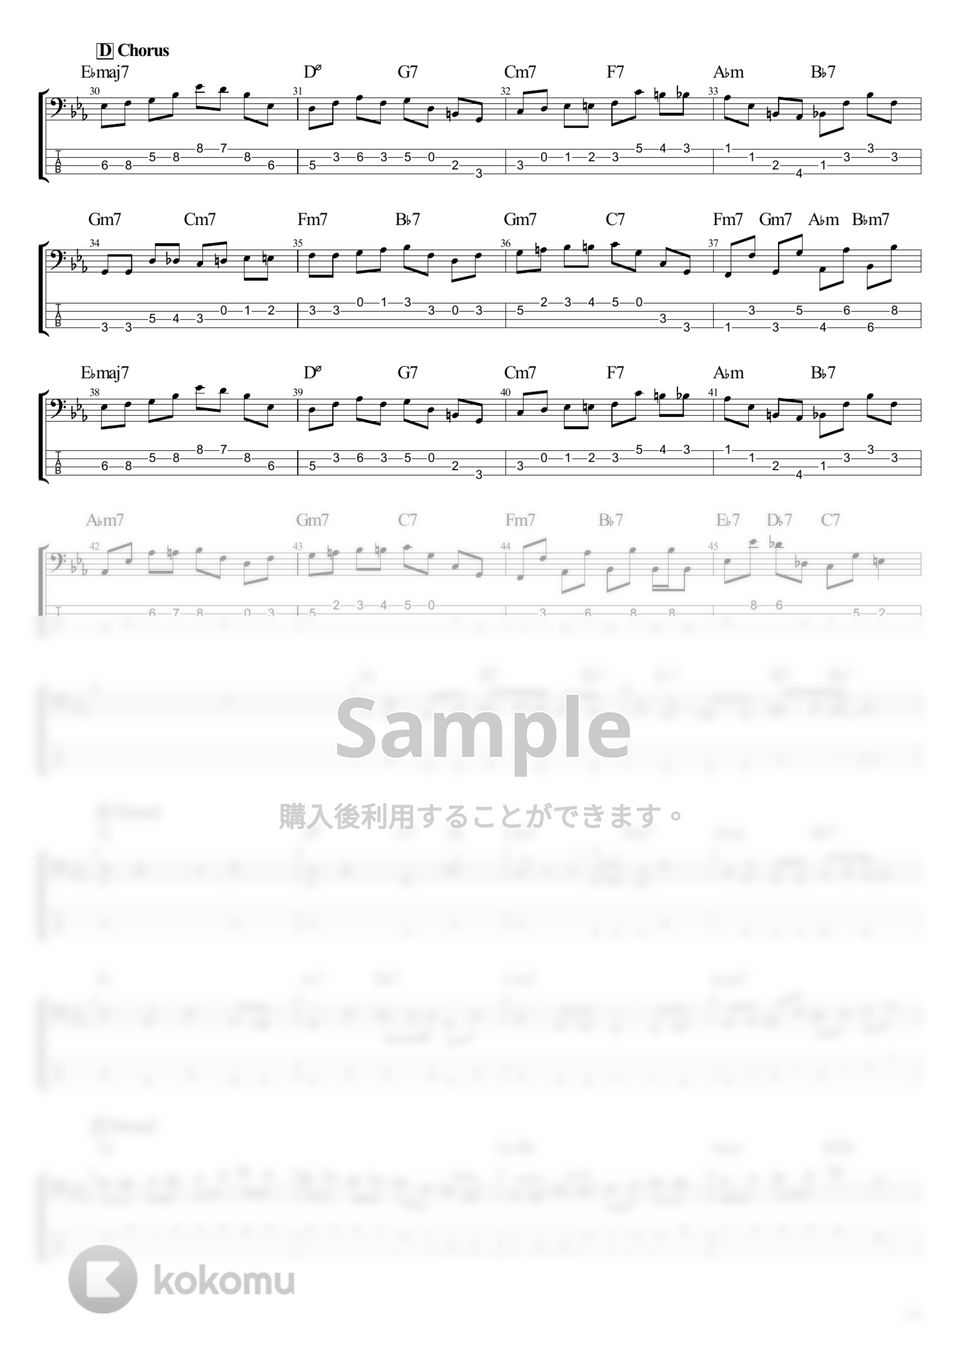 Van de Shop - 贅沢な匙 (ベース Tab譜 4弦) by T's bass score